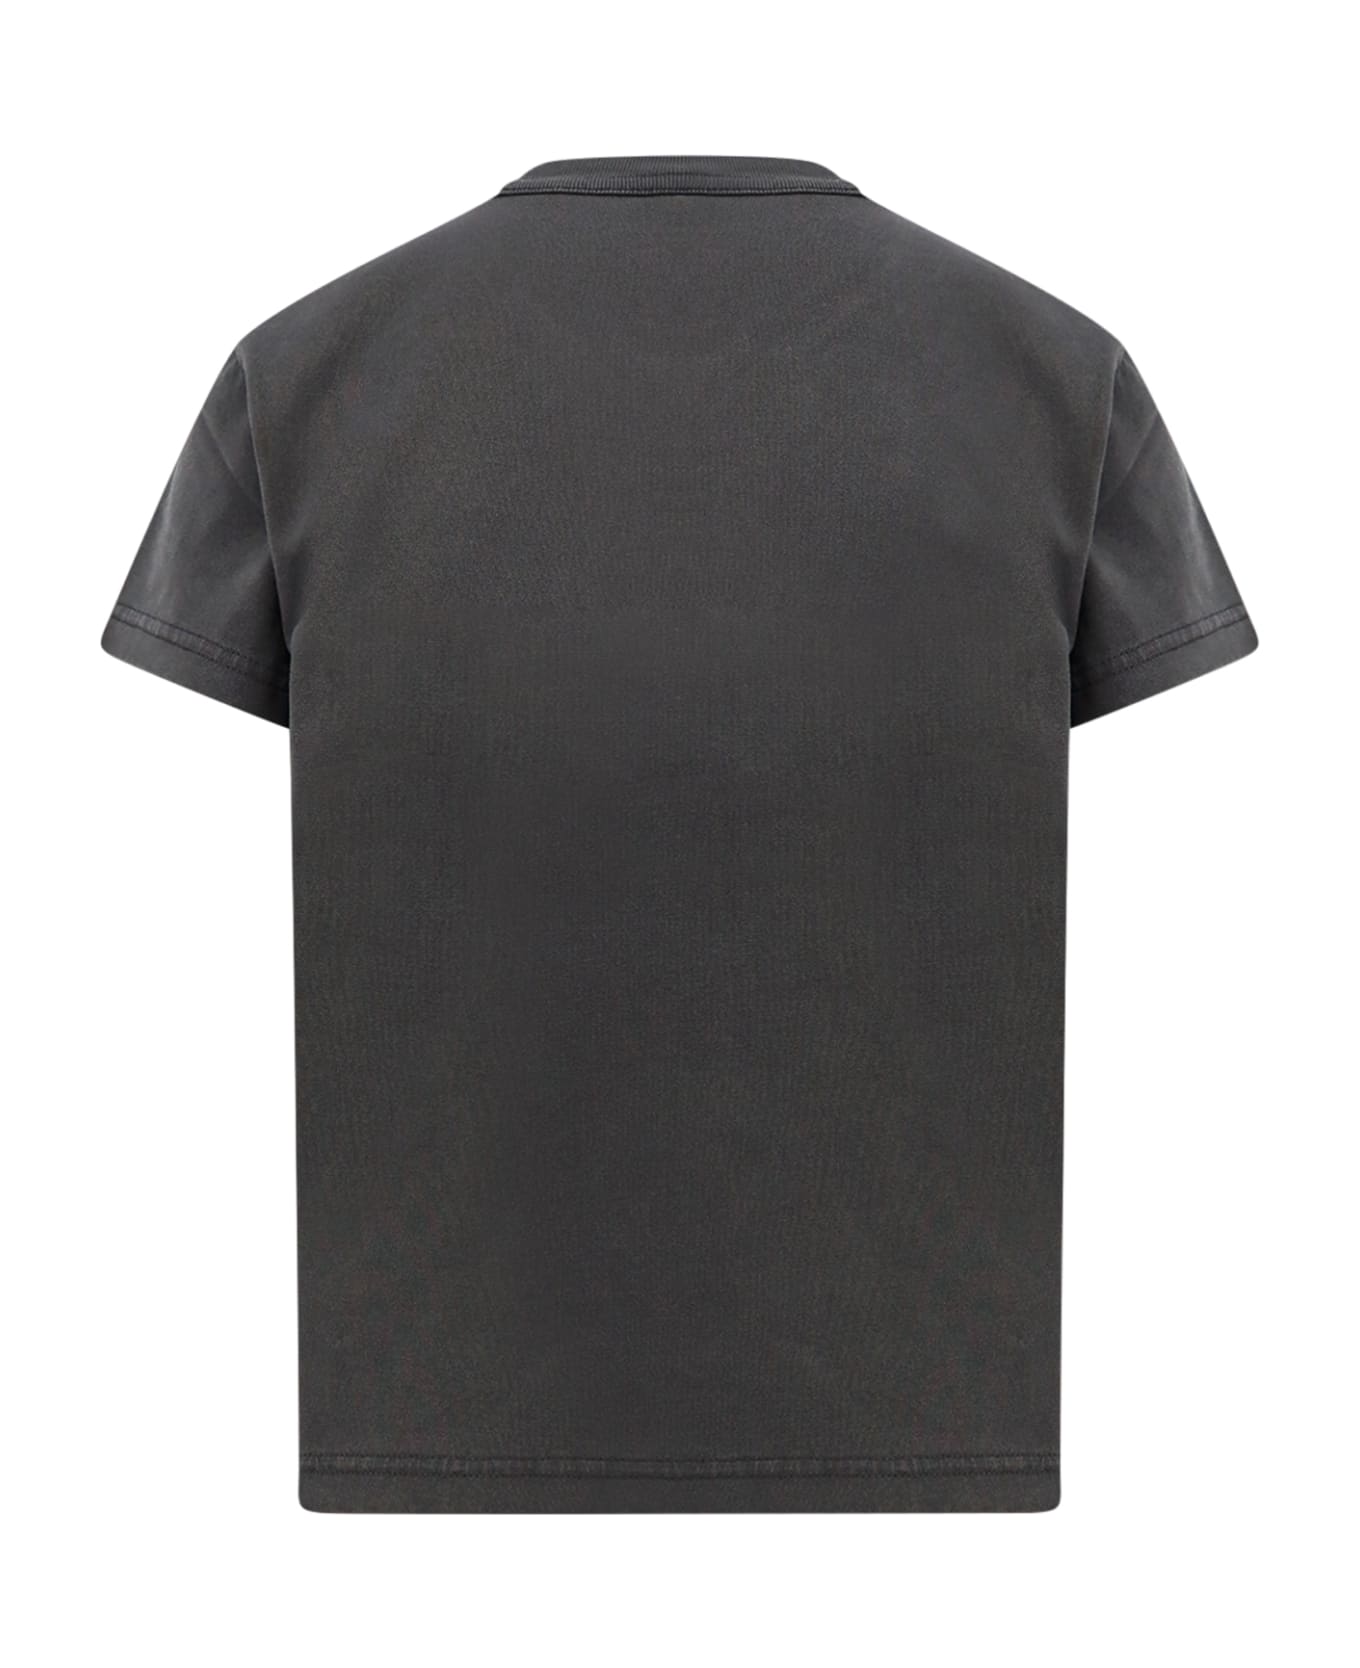 Alexander Wang T-shirt - A Soft Obsidian